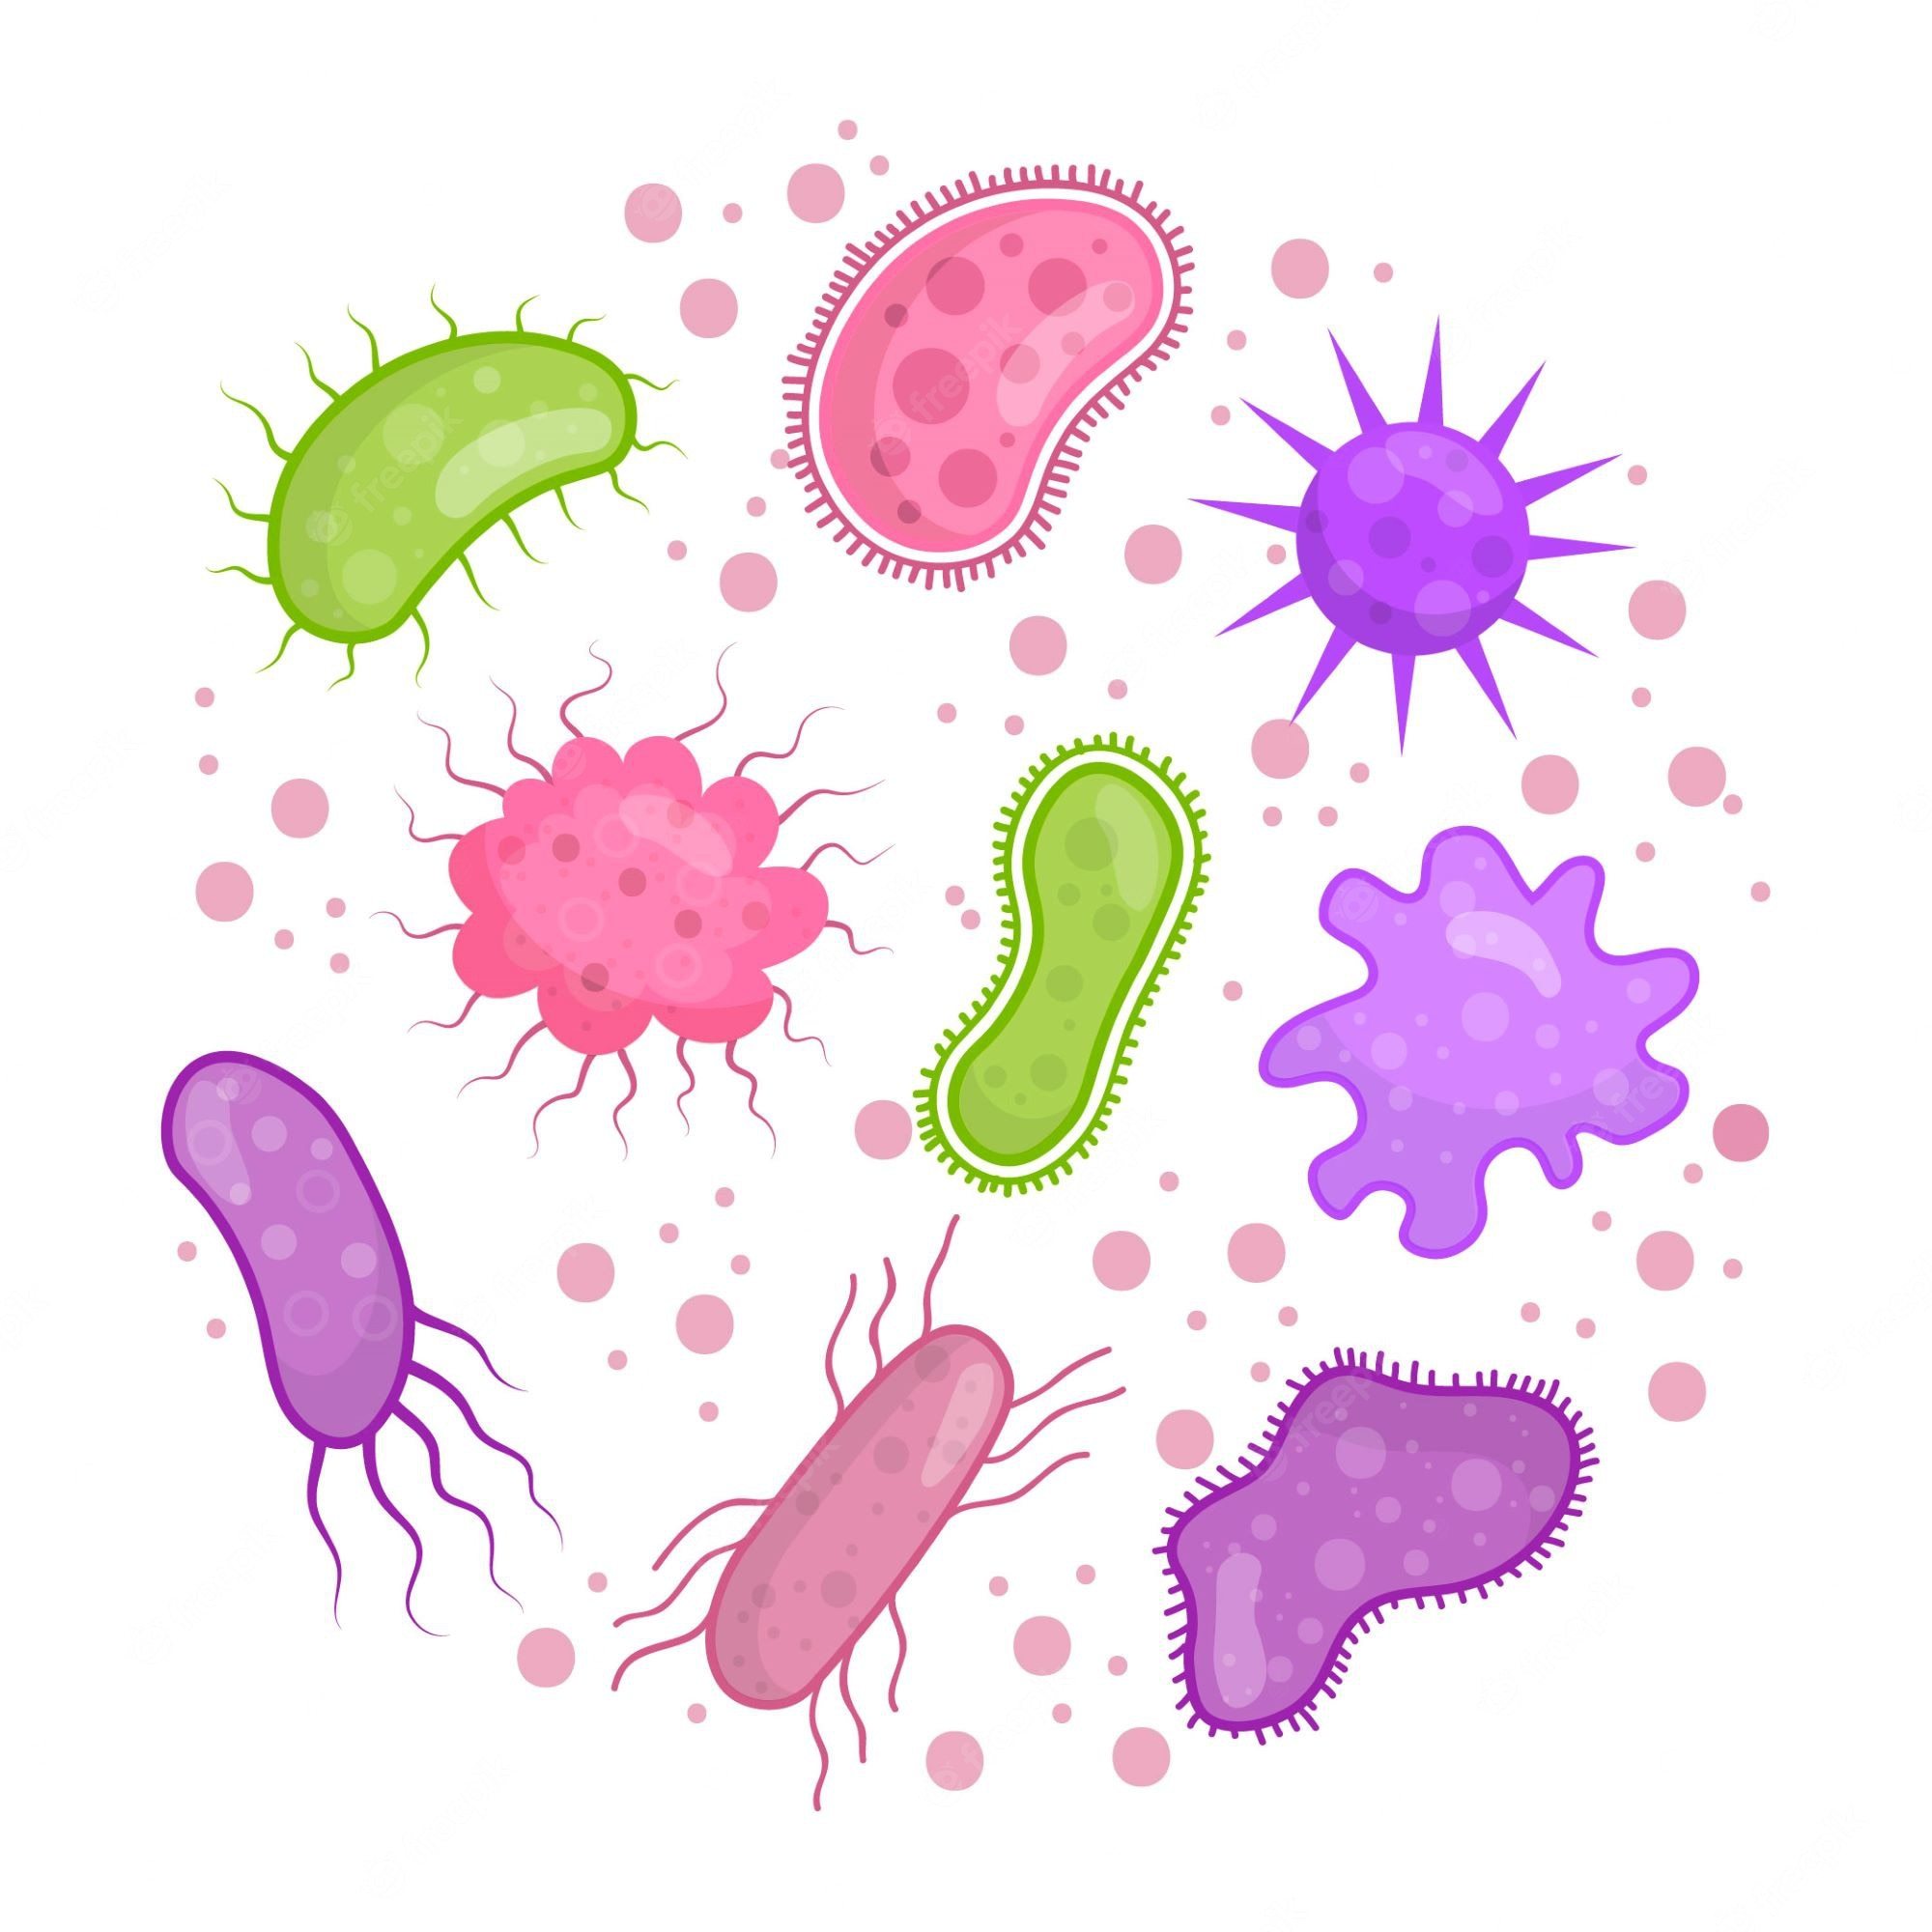 bactérias e arquéias - Série 11 - Questionário